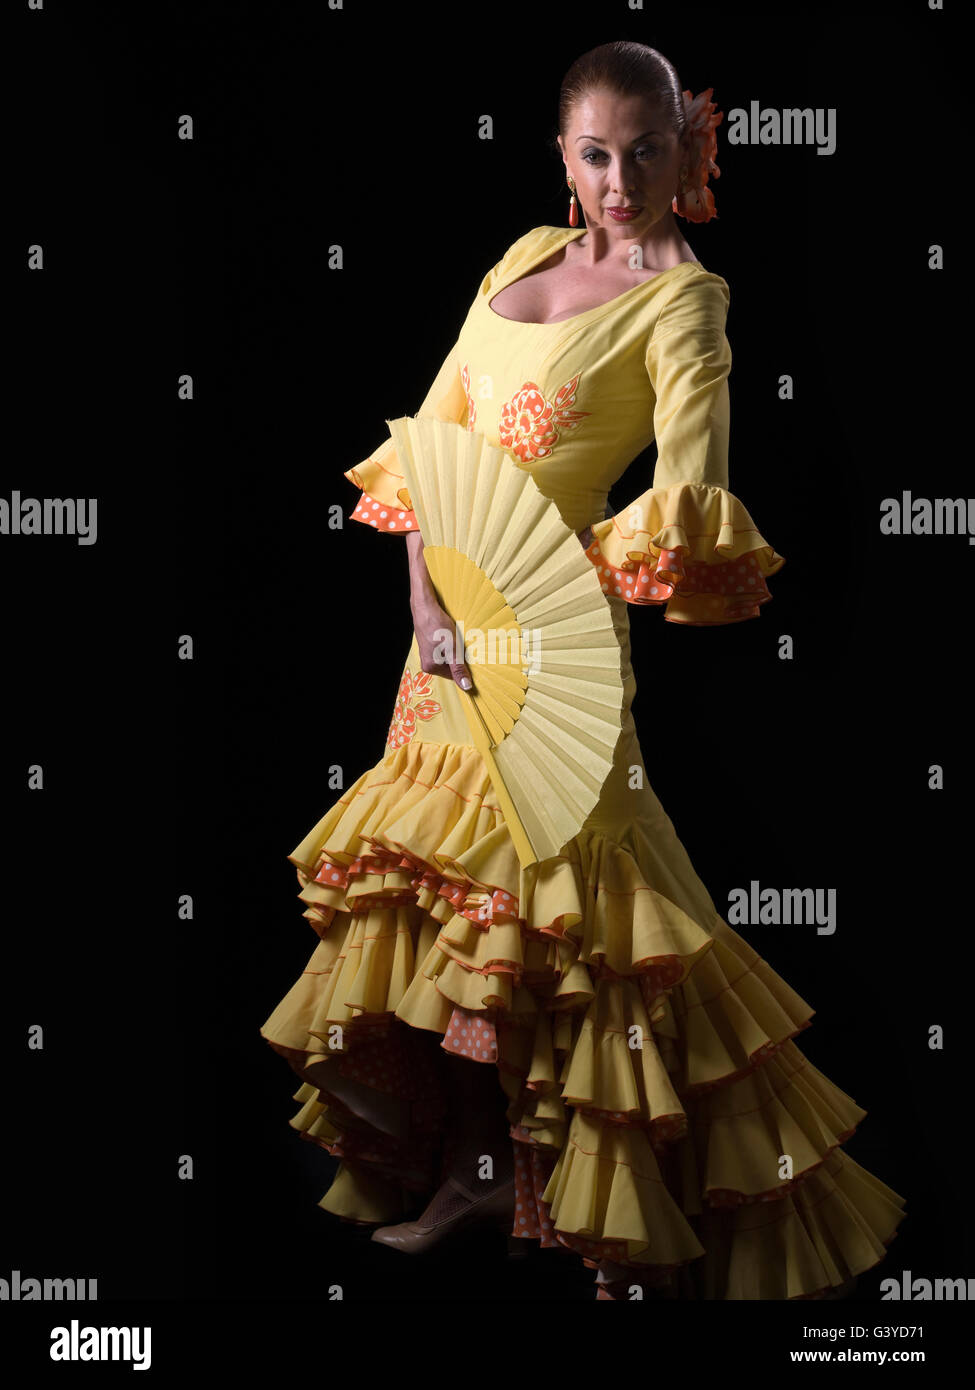 Femme espagnole, flamenco, regardant la caméra Banque D'Images